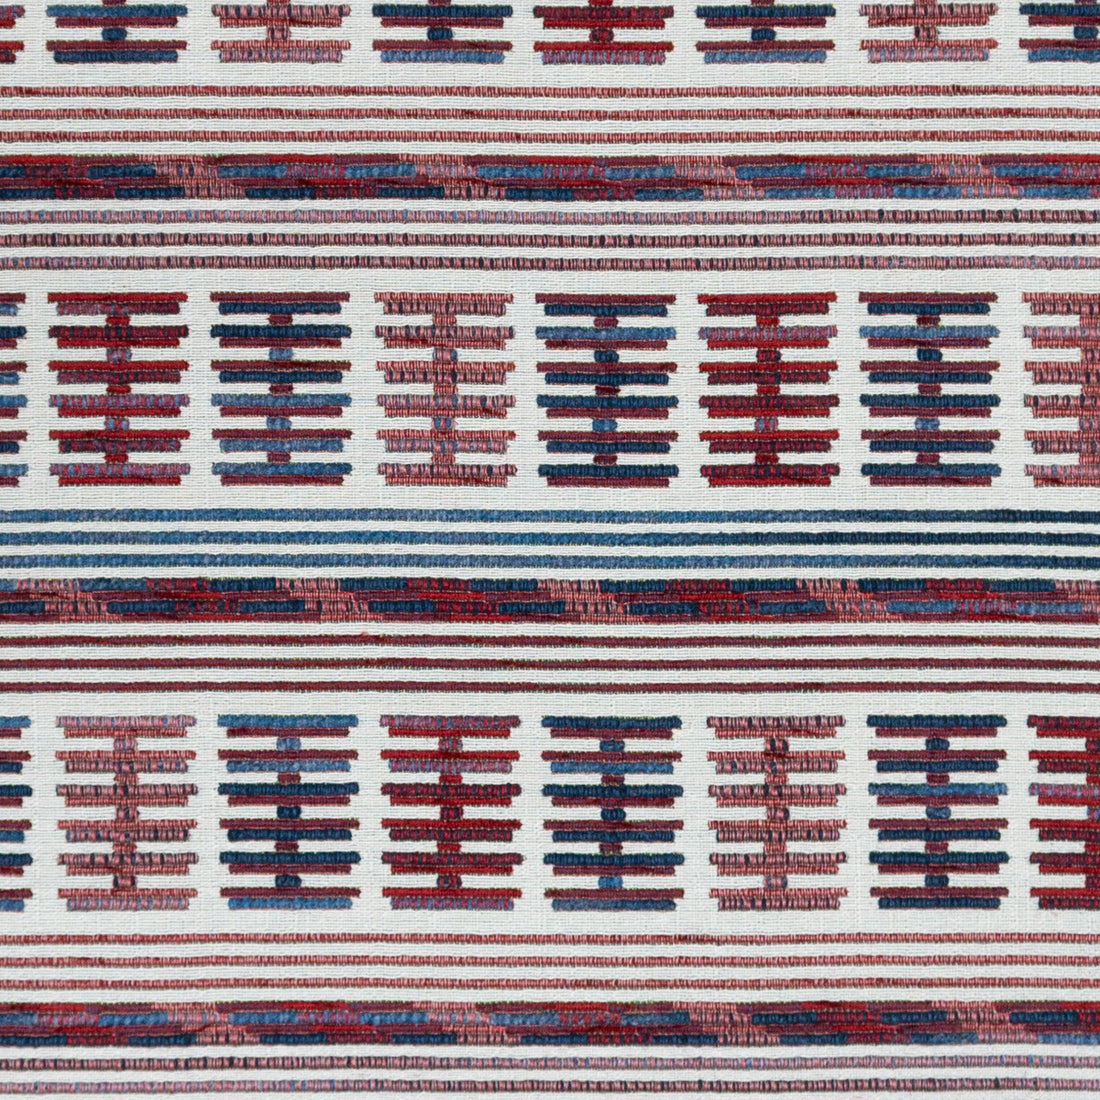 Toro Sentado fabric in azul/rojo color - pattern GDT5657.003.0 - by Gaston y Daniela in the Gaston Rio Grande collection